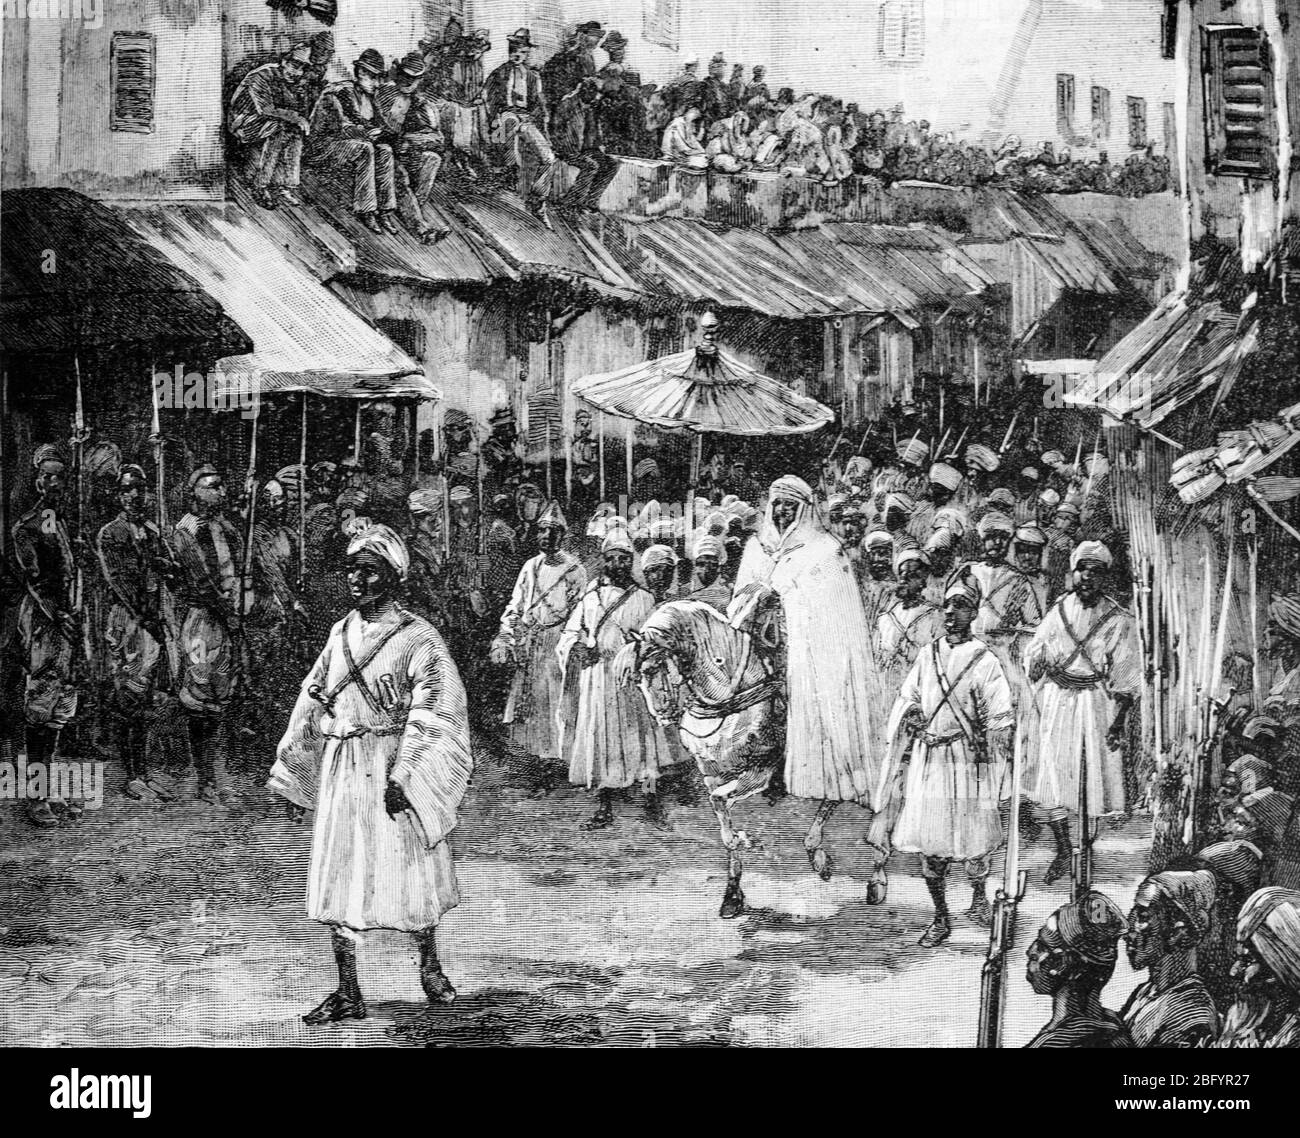 Alaouite Sultan Hassan I du Maroc (1836-1894, régna 1873-1894) se rendant en procession dans les rues de Tanger Maroc. Vintage ou ancienne illustration ou gravure 1889 Banque D'Images